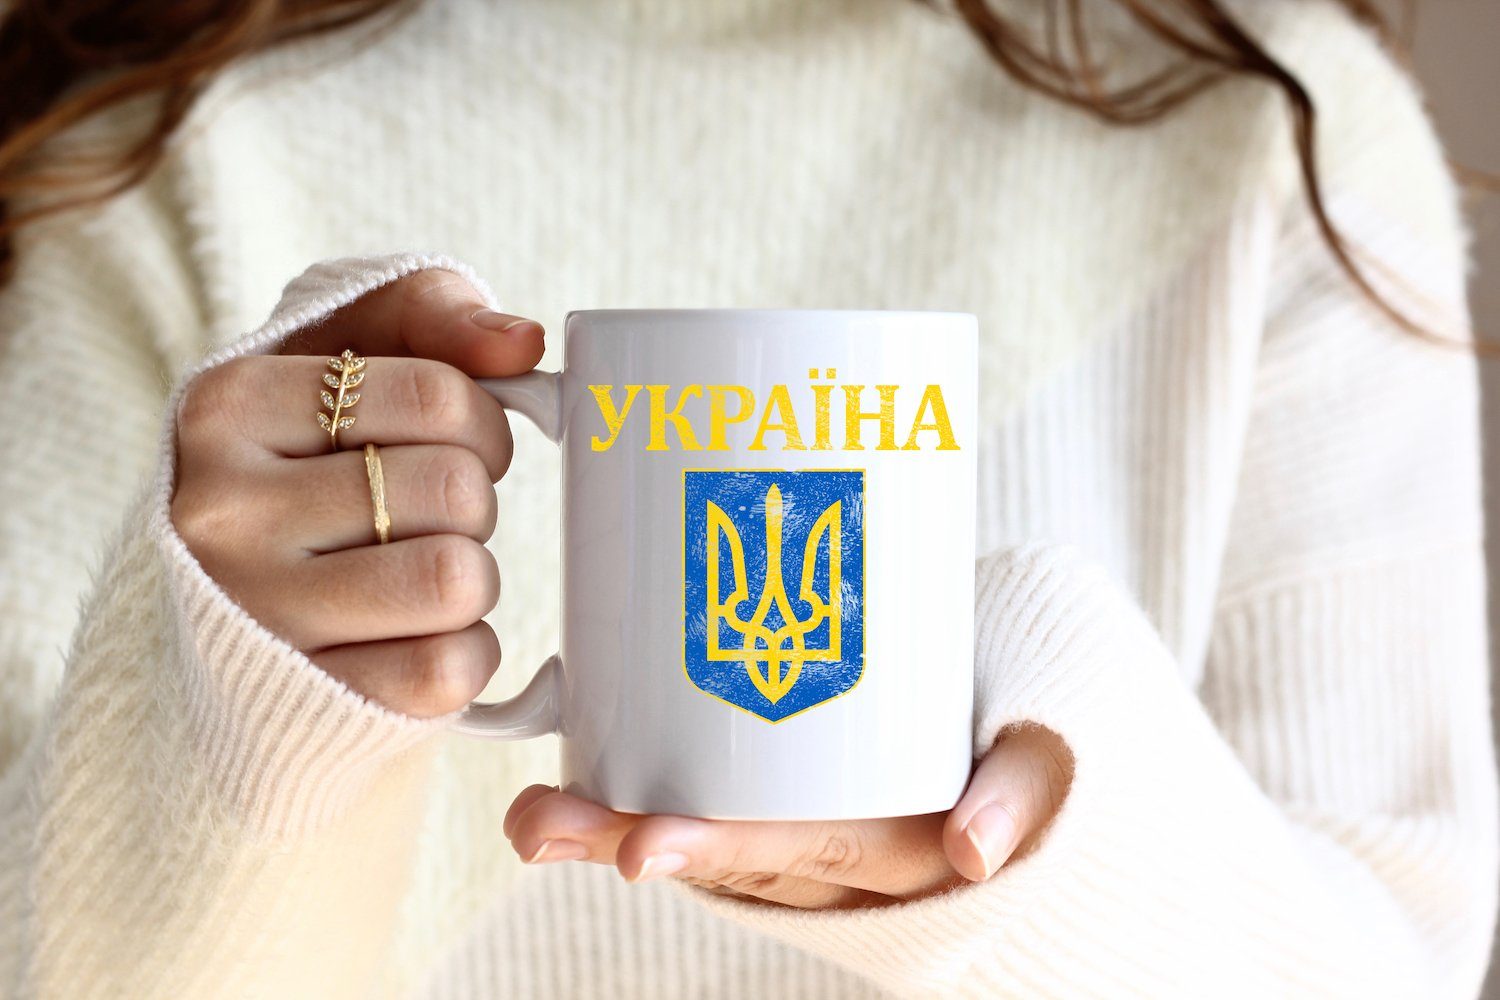 Youth Designz Tasse Vintage Ukraine Weiss/Royal mit Print Vintage Wappen Keramik, Kaffeetasse Geschenk, Wappen